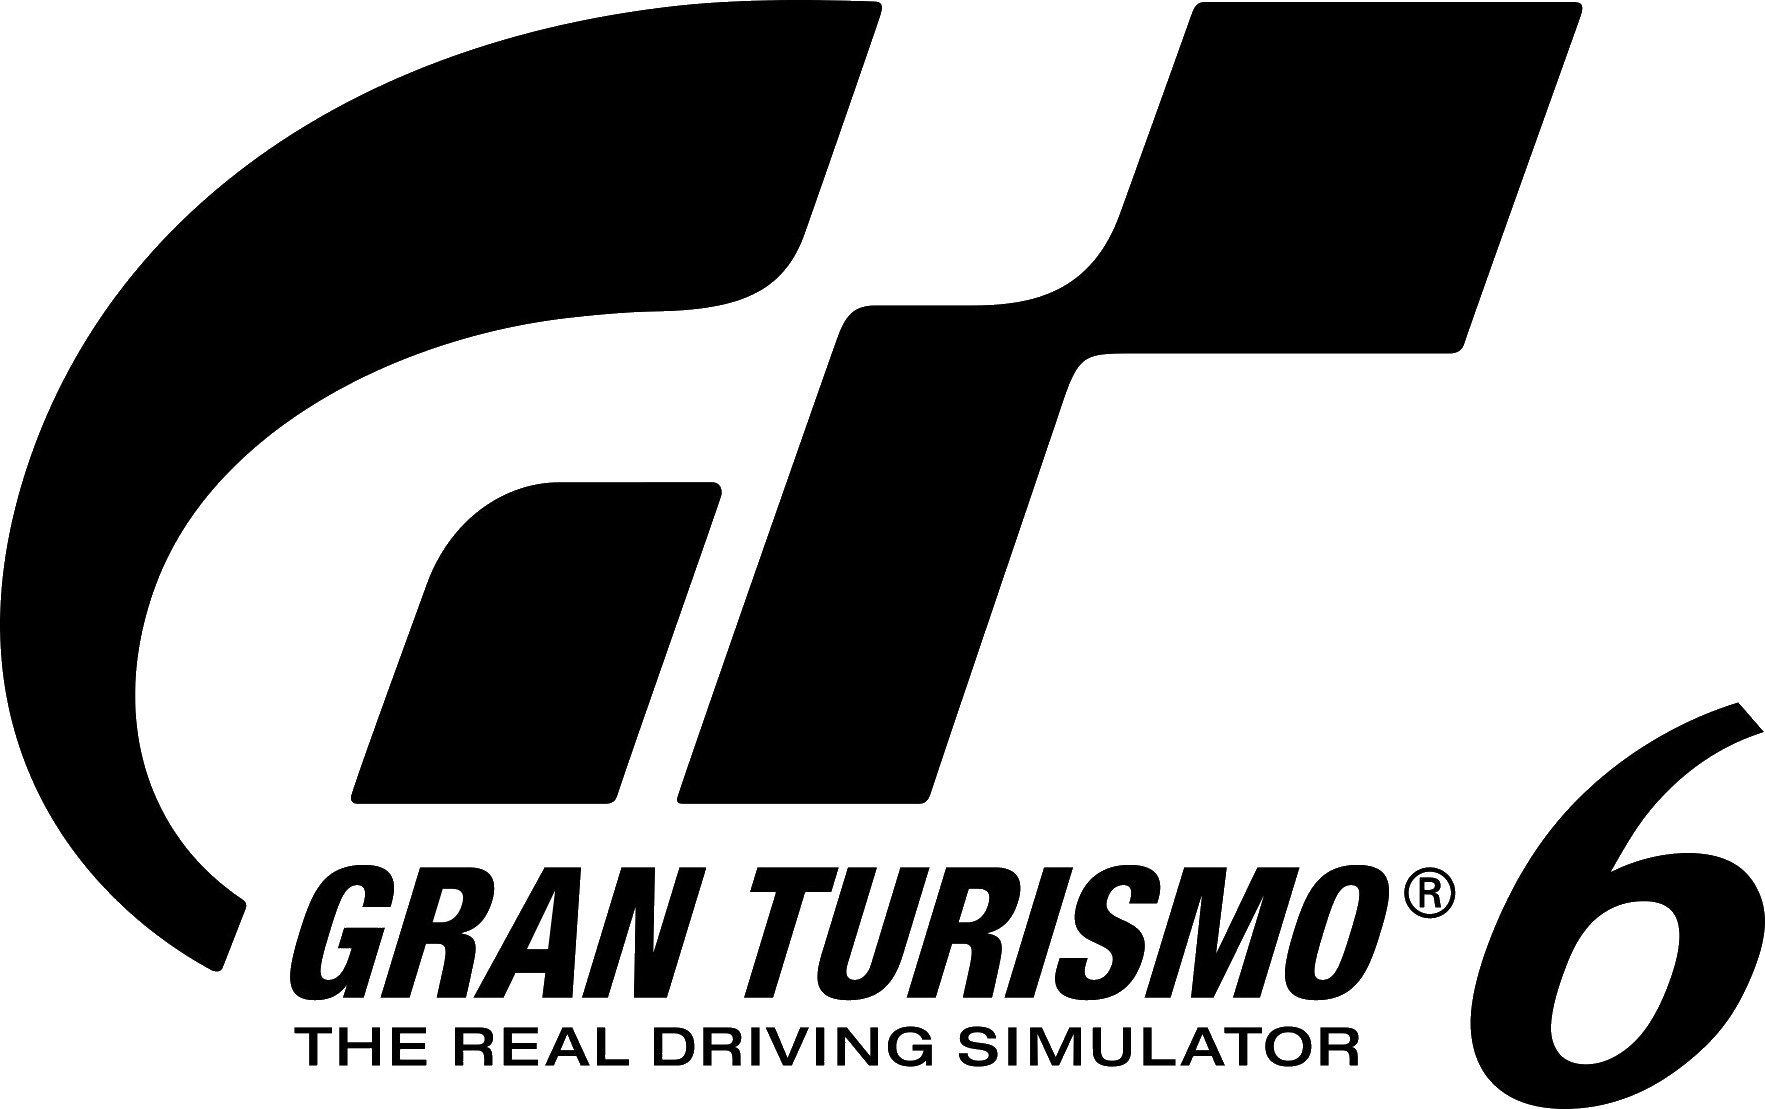 Gran Turismo Sport Logo by Ni